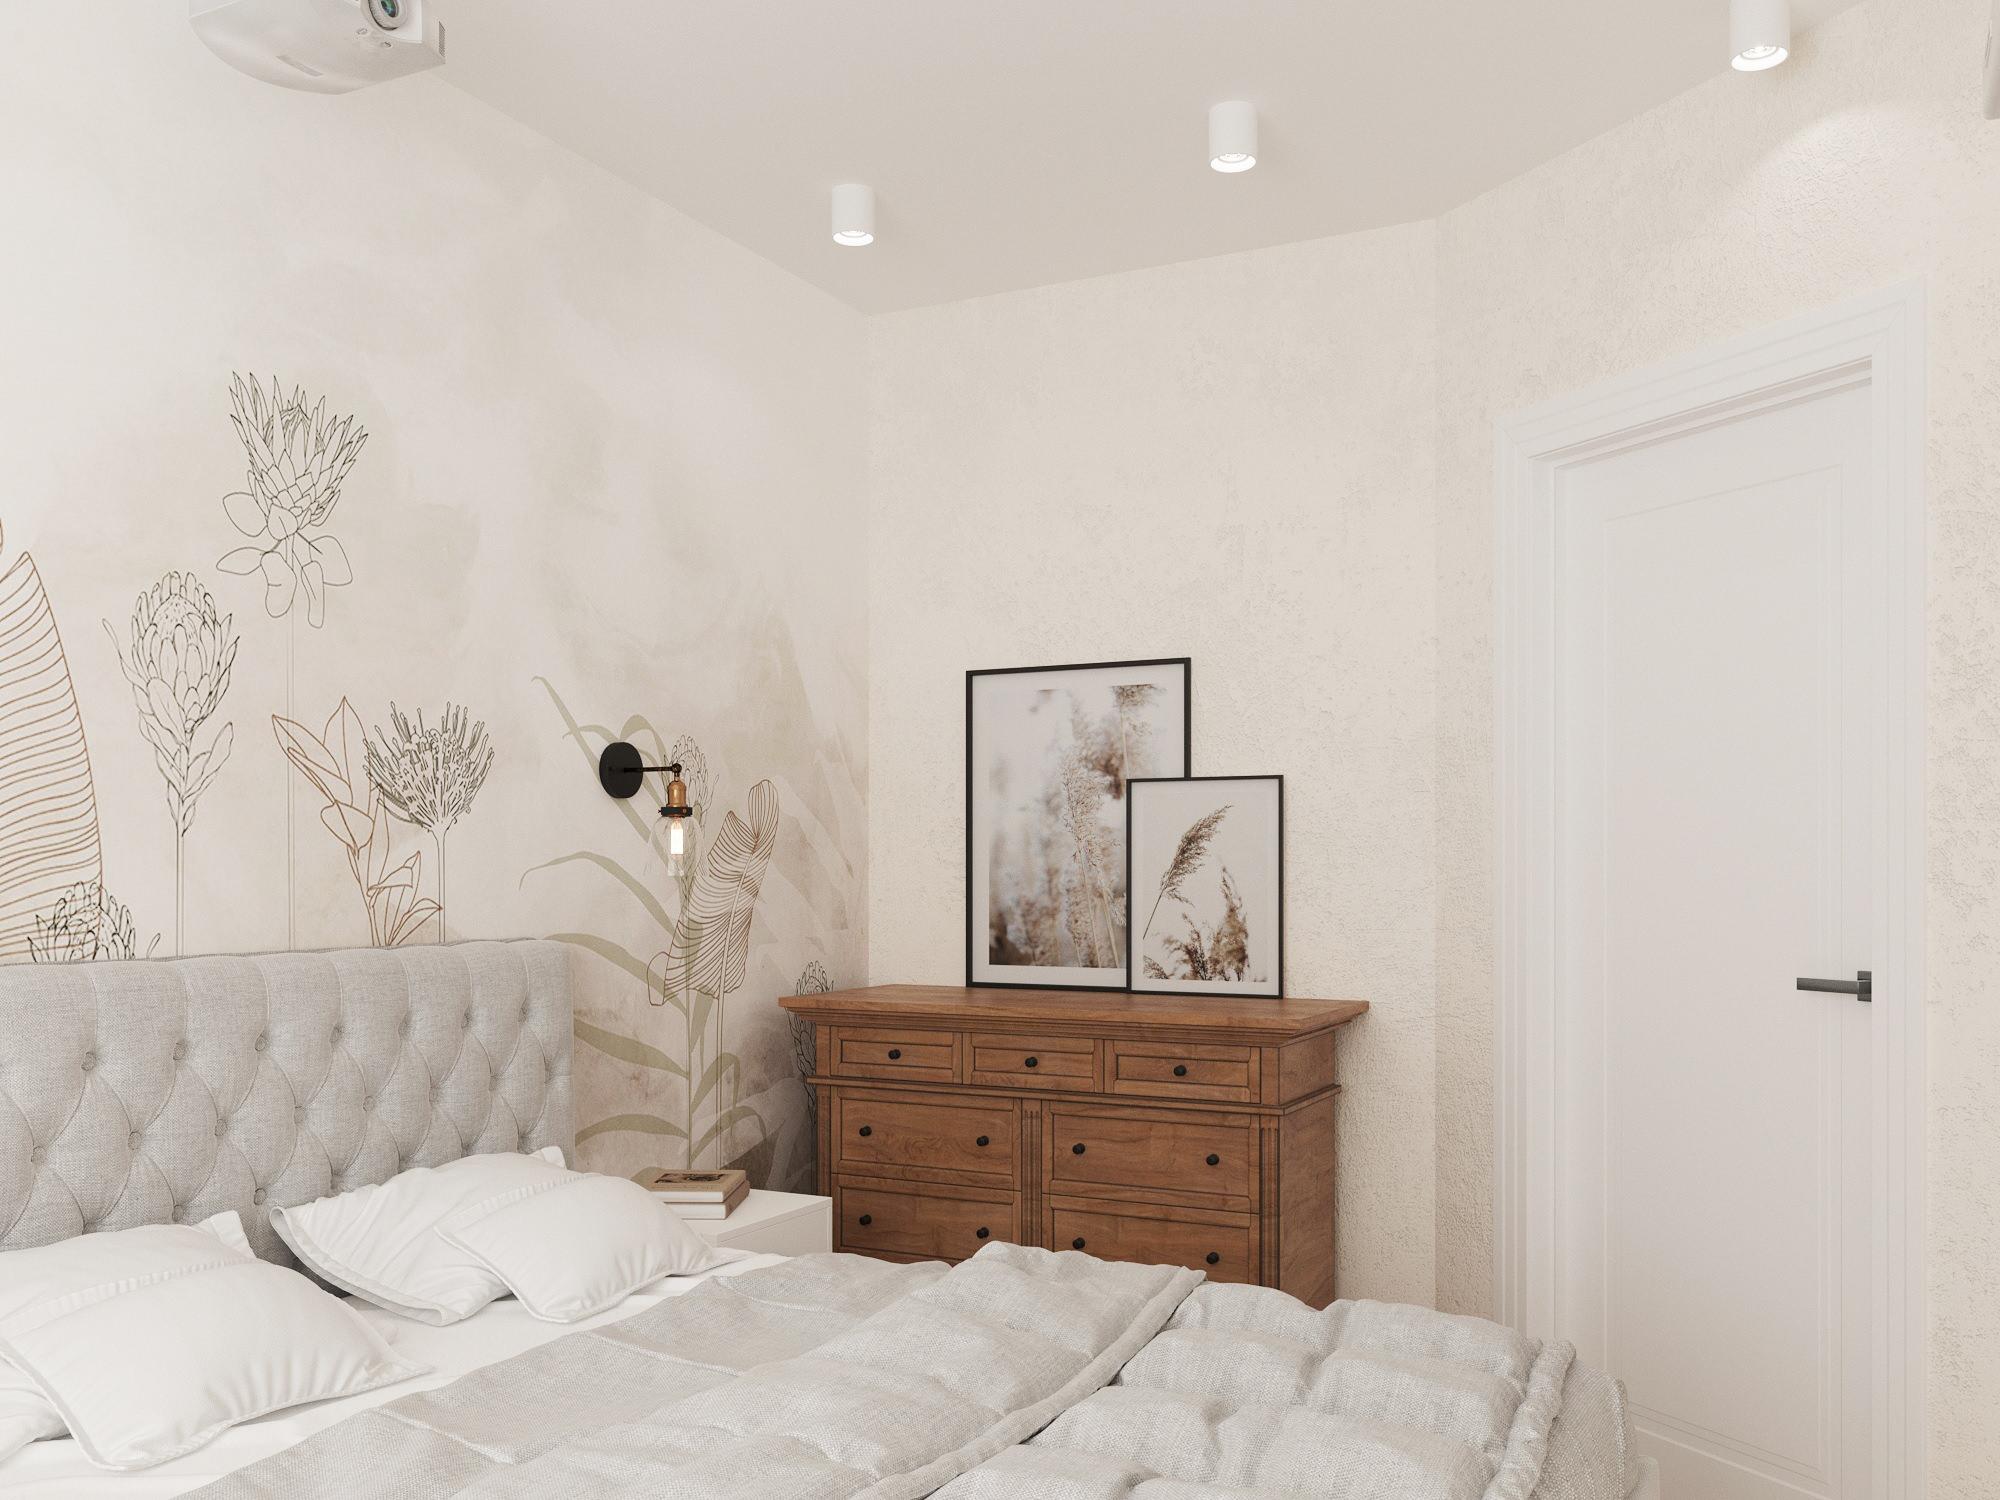 Интерьер спальни с подсветкой настенной и подсветкой светодиодной в современном стиле